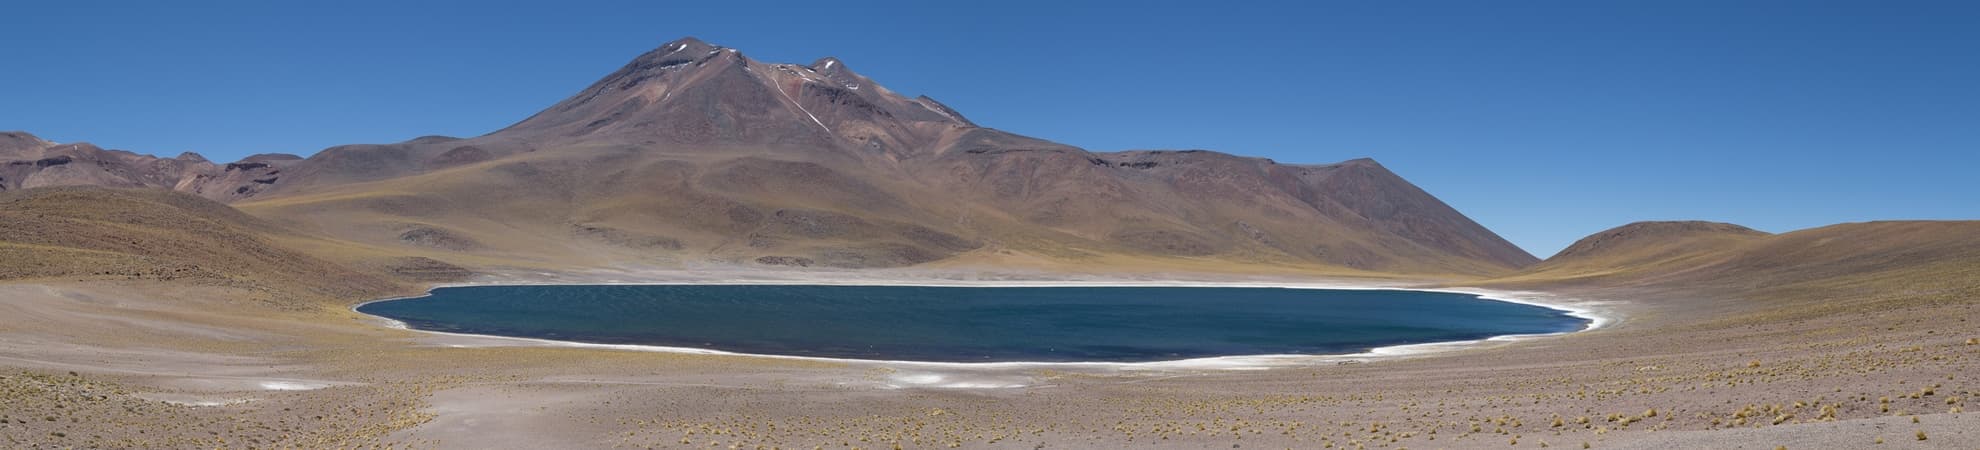 Voyage San Pedro de Atacama